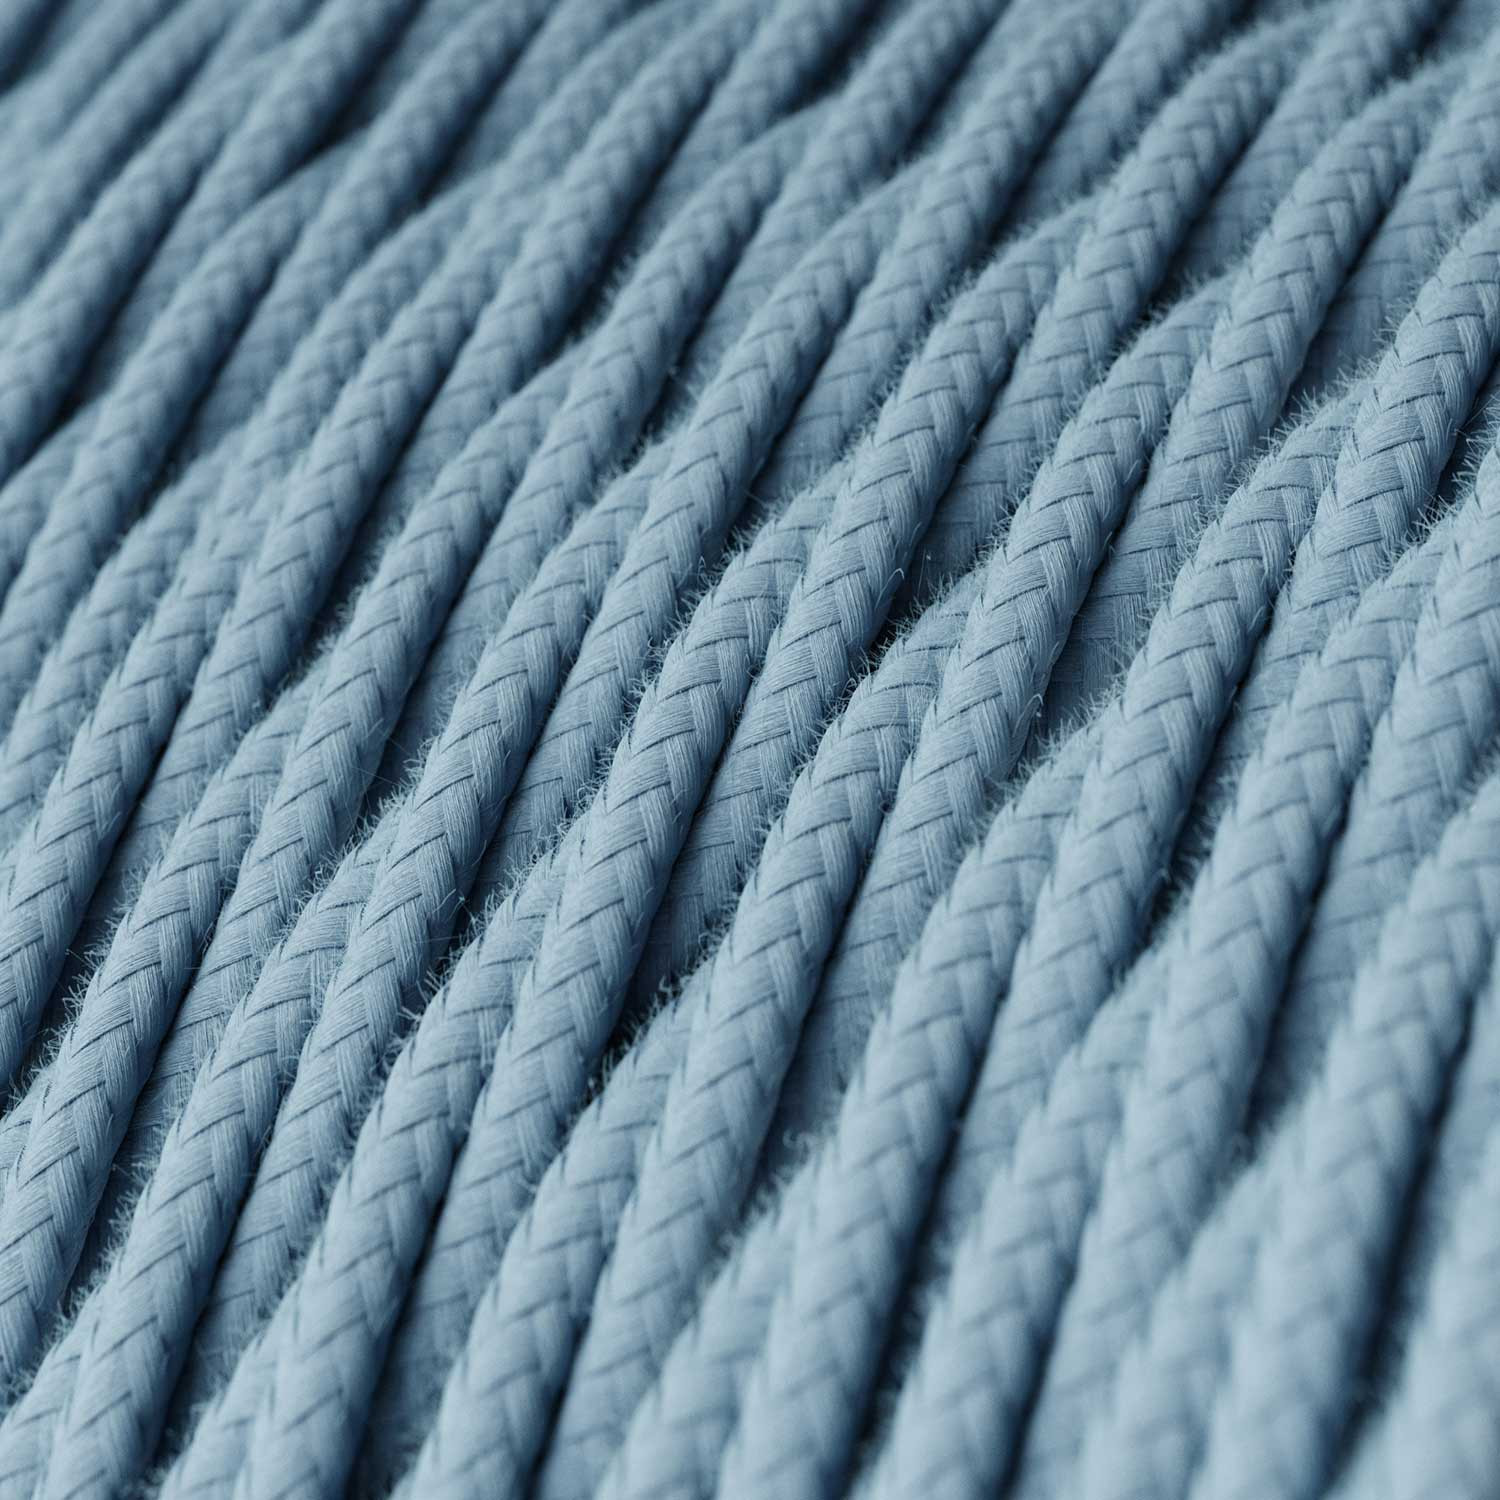 Cavo tessile Blu Oceano in cotone - L'Originale Creative-Cables - TC53 trecciato 2x0,75mm / 3x0,75mm